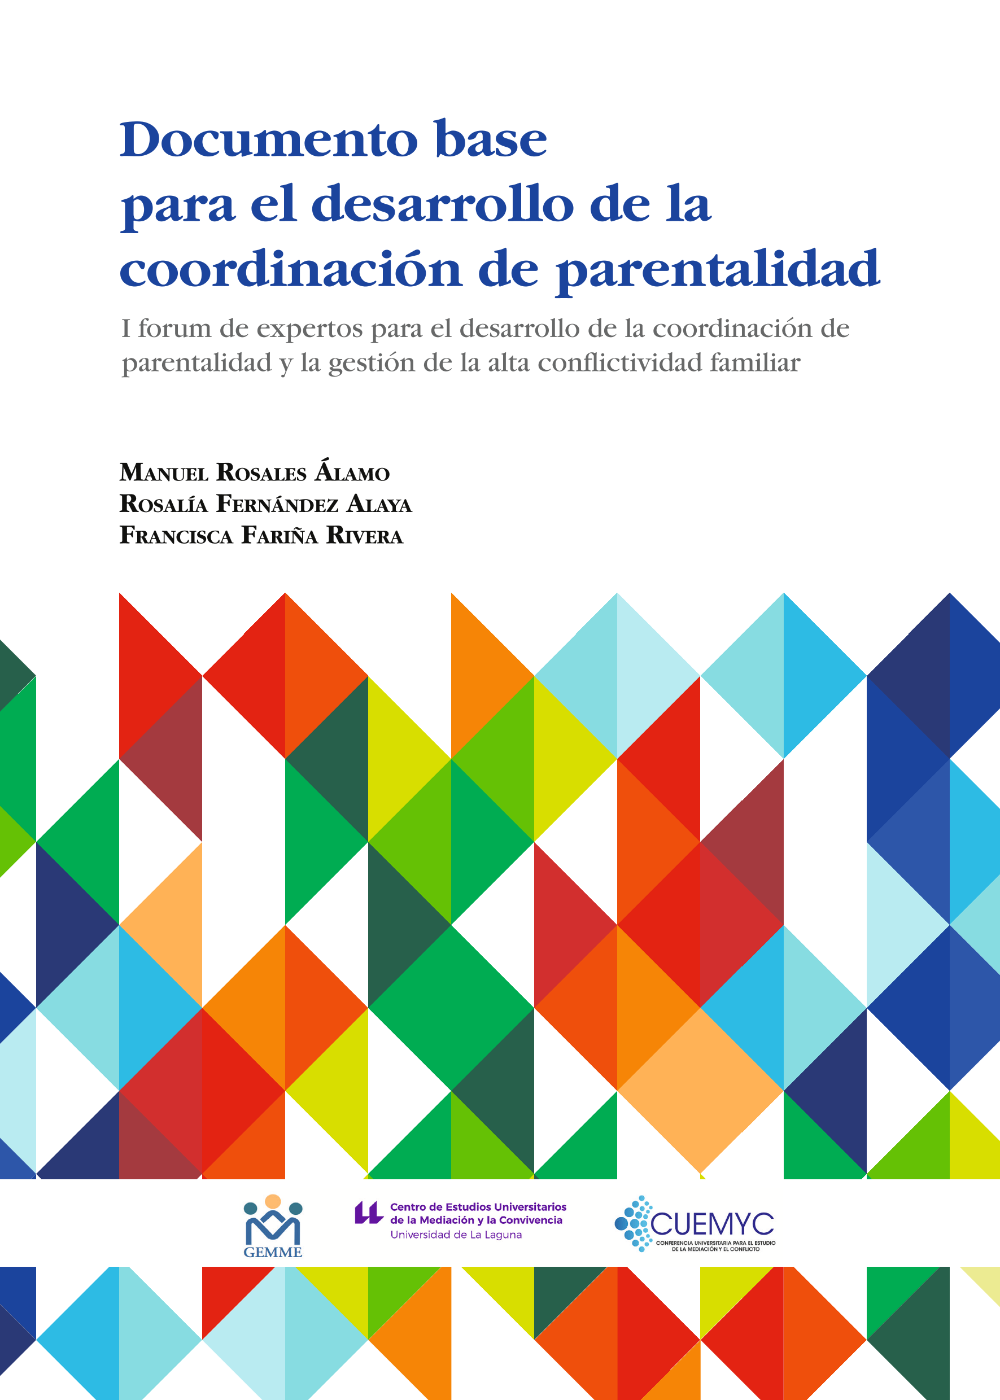 Imagen de portada del libro Documento base para el desarrollo de la coordinación de parentalidad